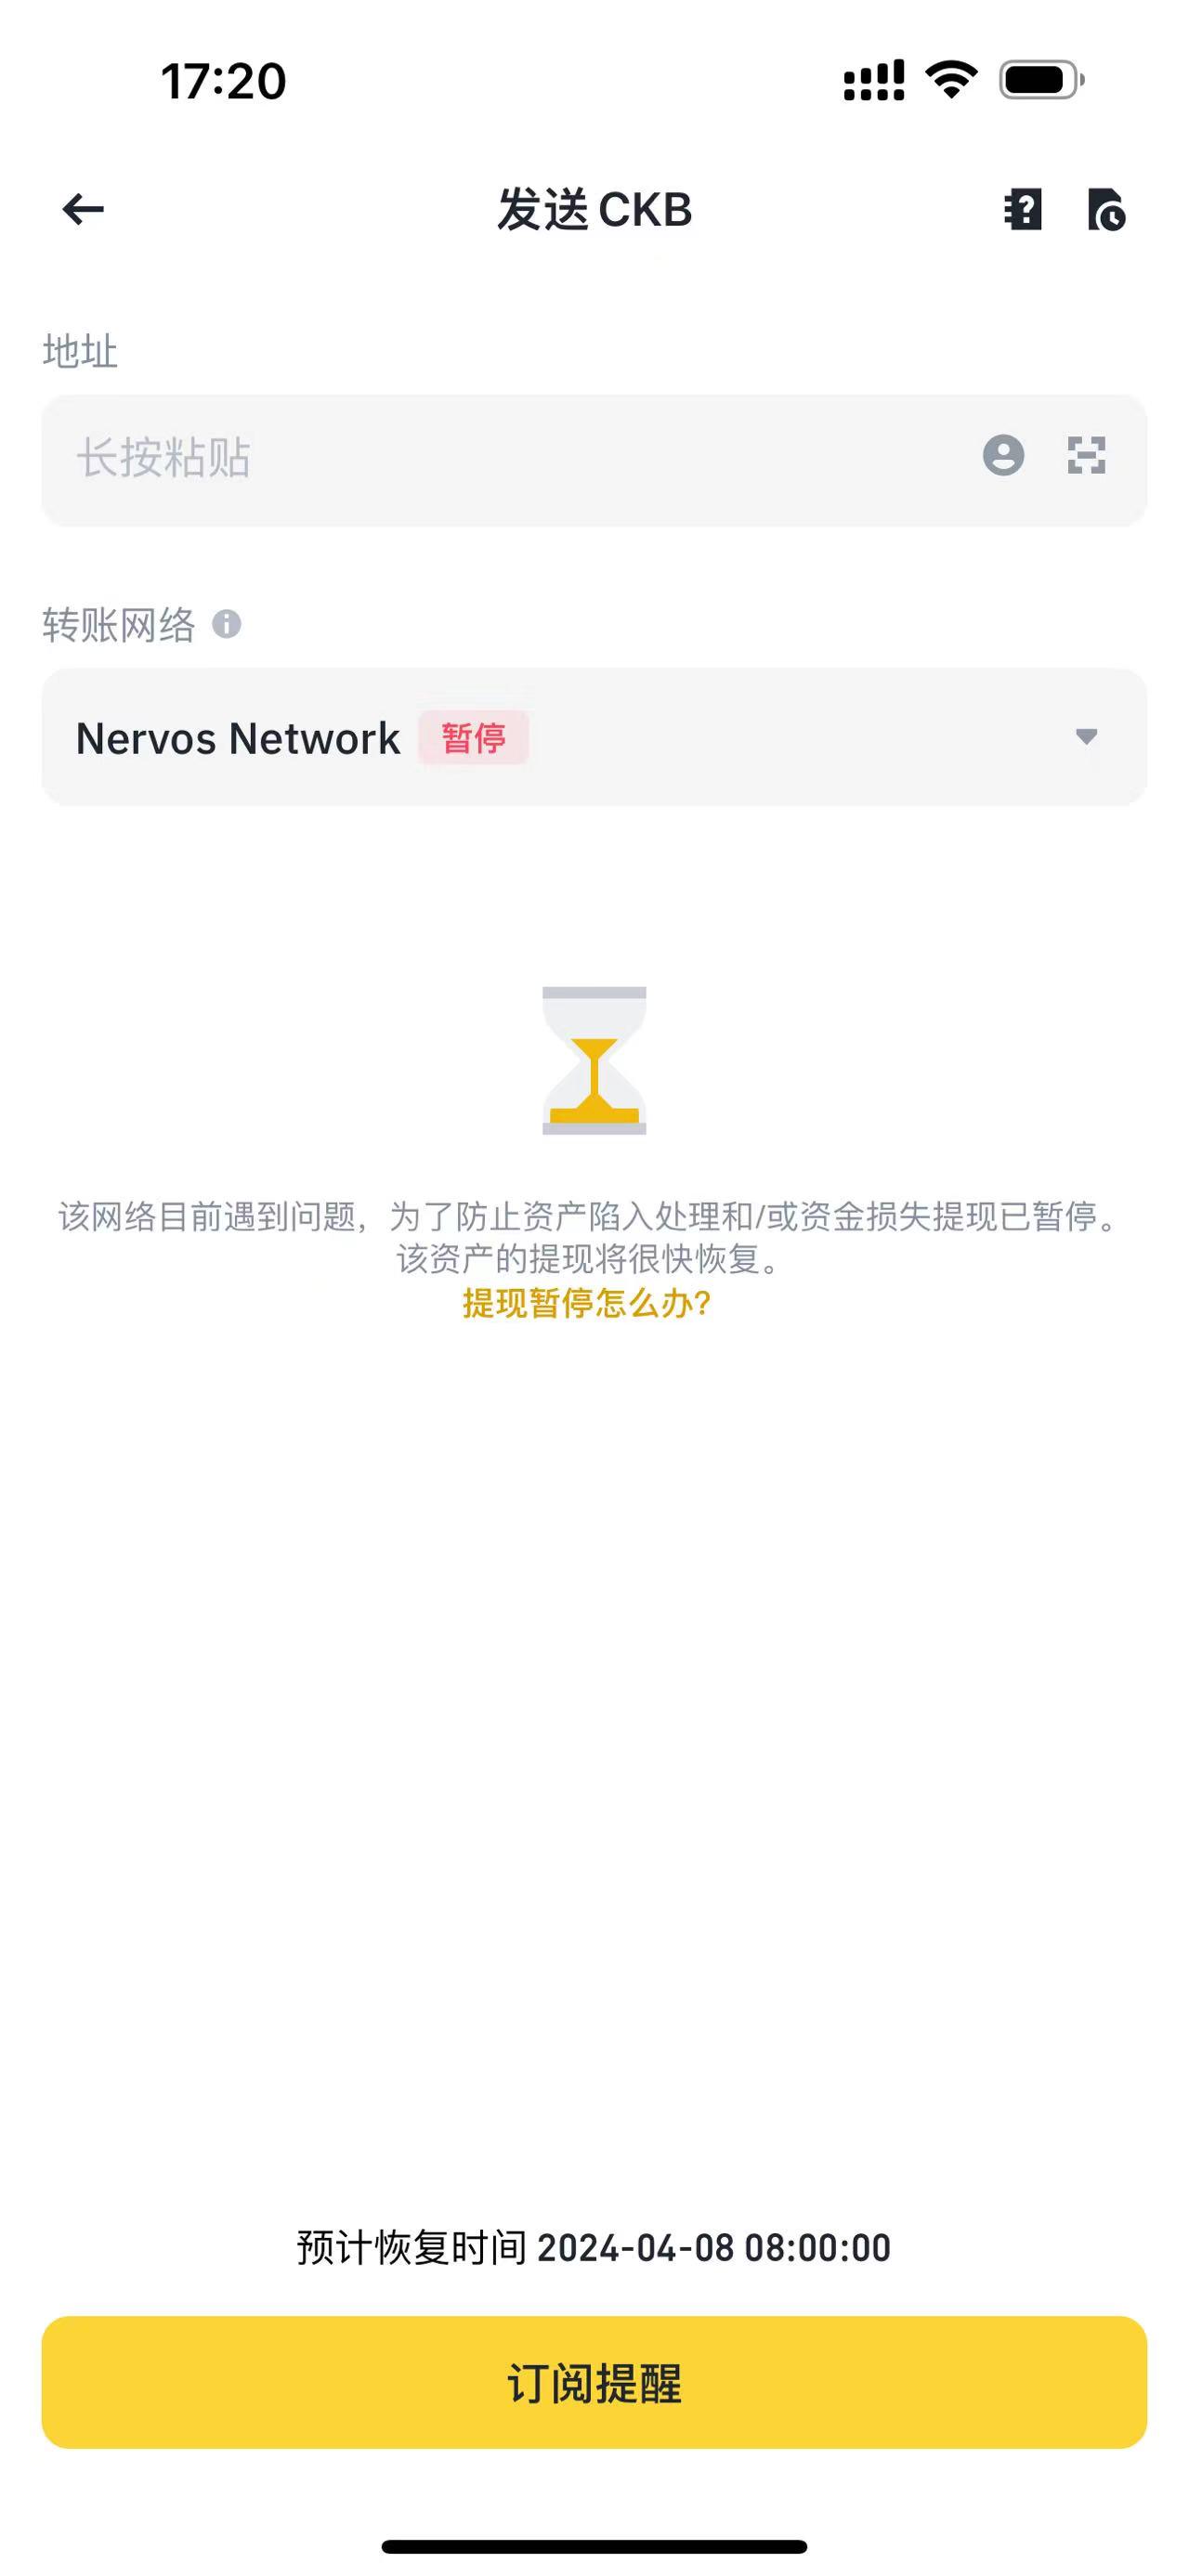 幣安已暫停CKB在Nervos Network上的提領服務